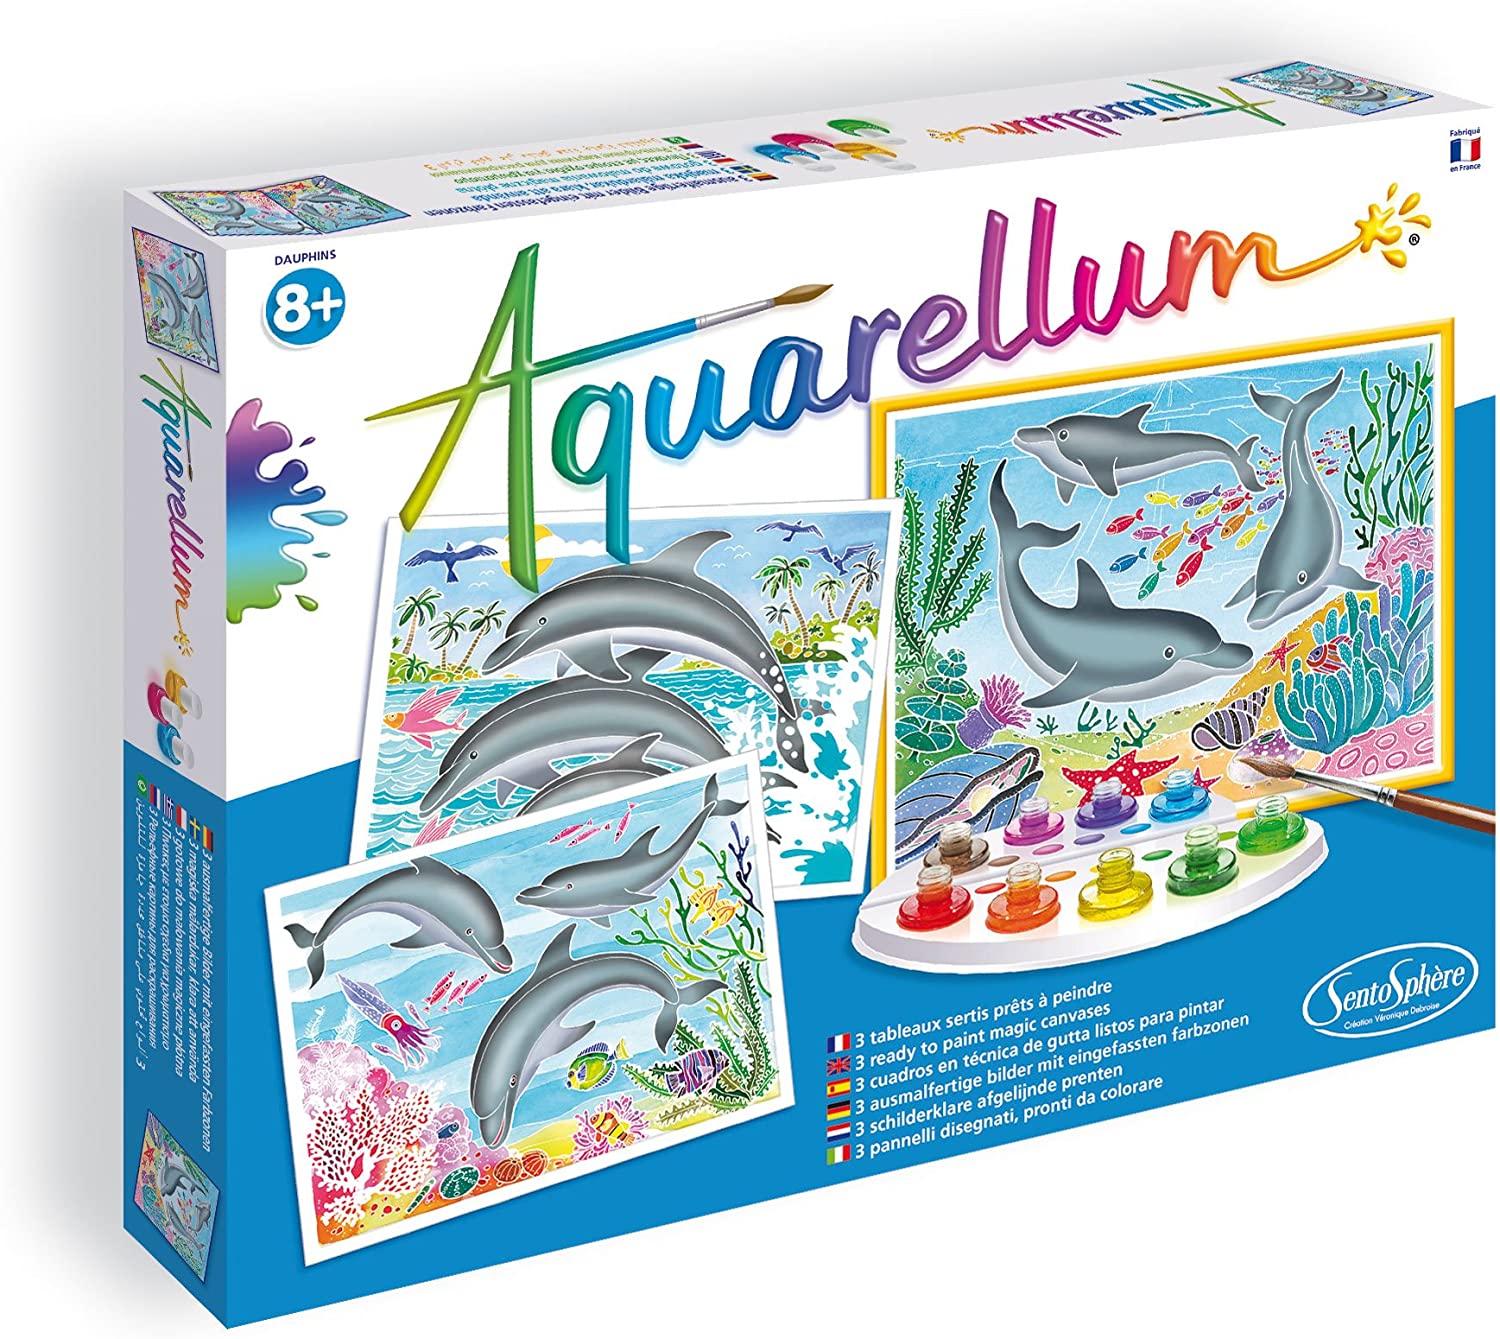 Sentosphère - Aquarellum - Fish - My Bulle Toys